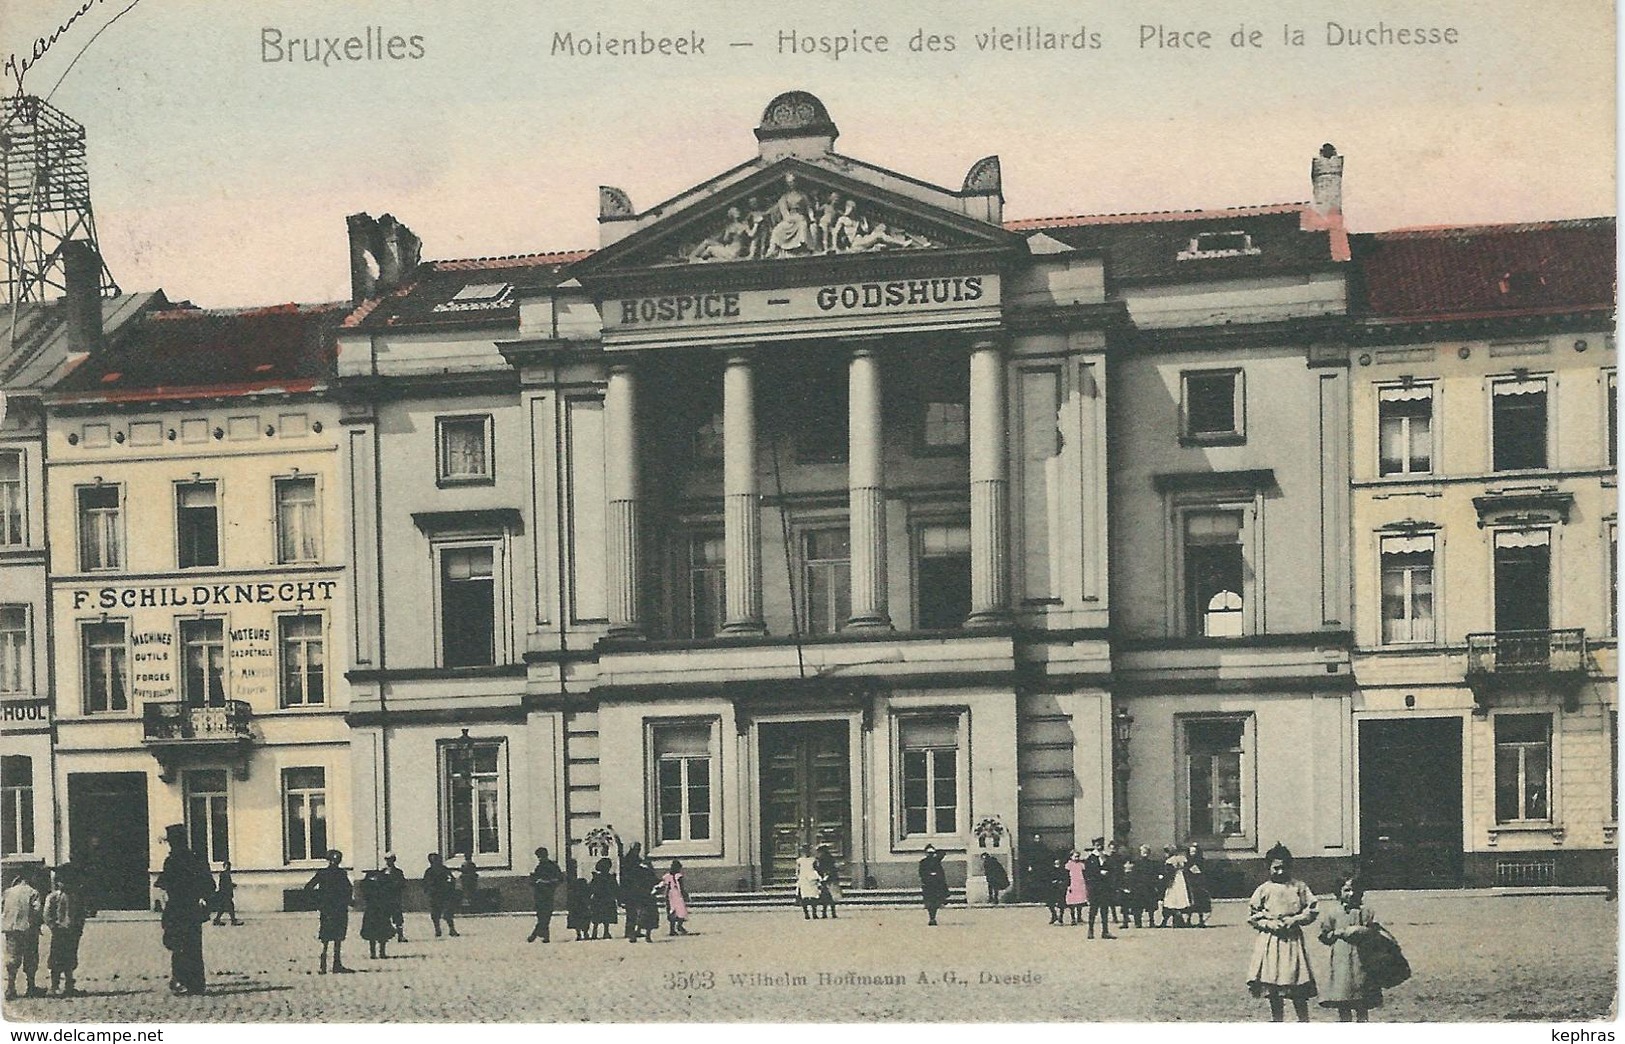 BRUXELLES - MOLENBEEK : Hospice Des Vieillards - Place De La Duchesse - TRES RARE COLORISEE Cachet De La Poste 1904 - Molenbeek-St-Jean - St-Jans-Molenbeek